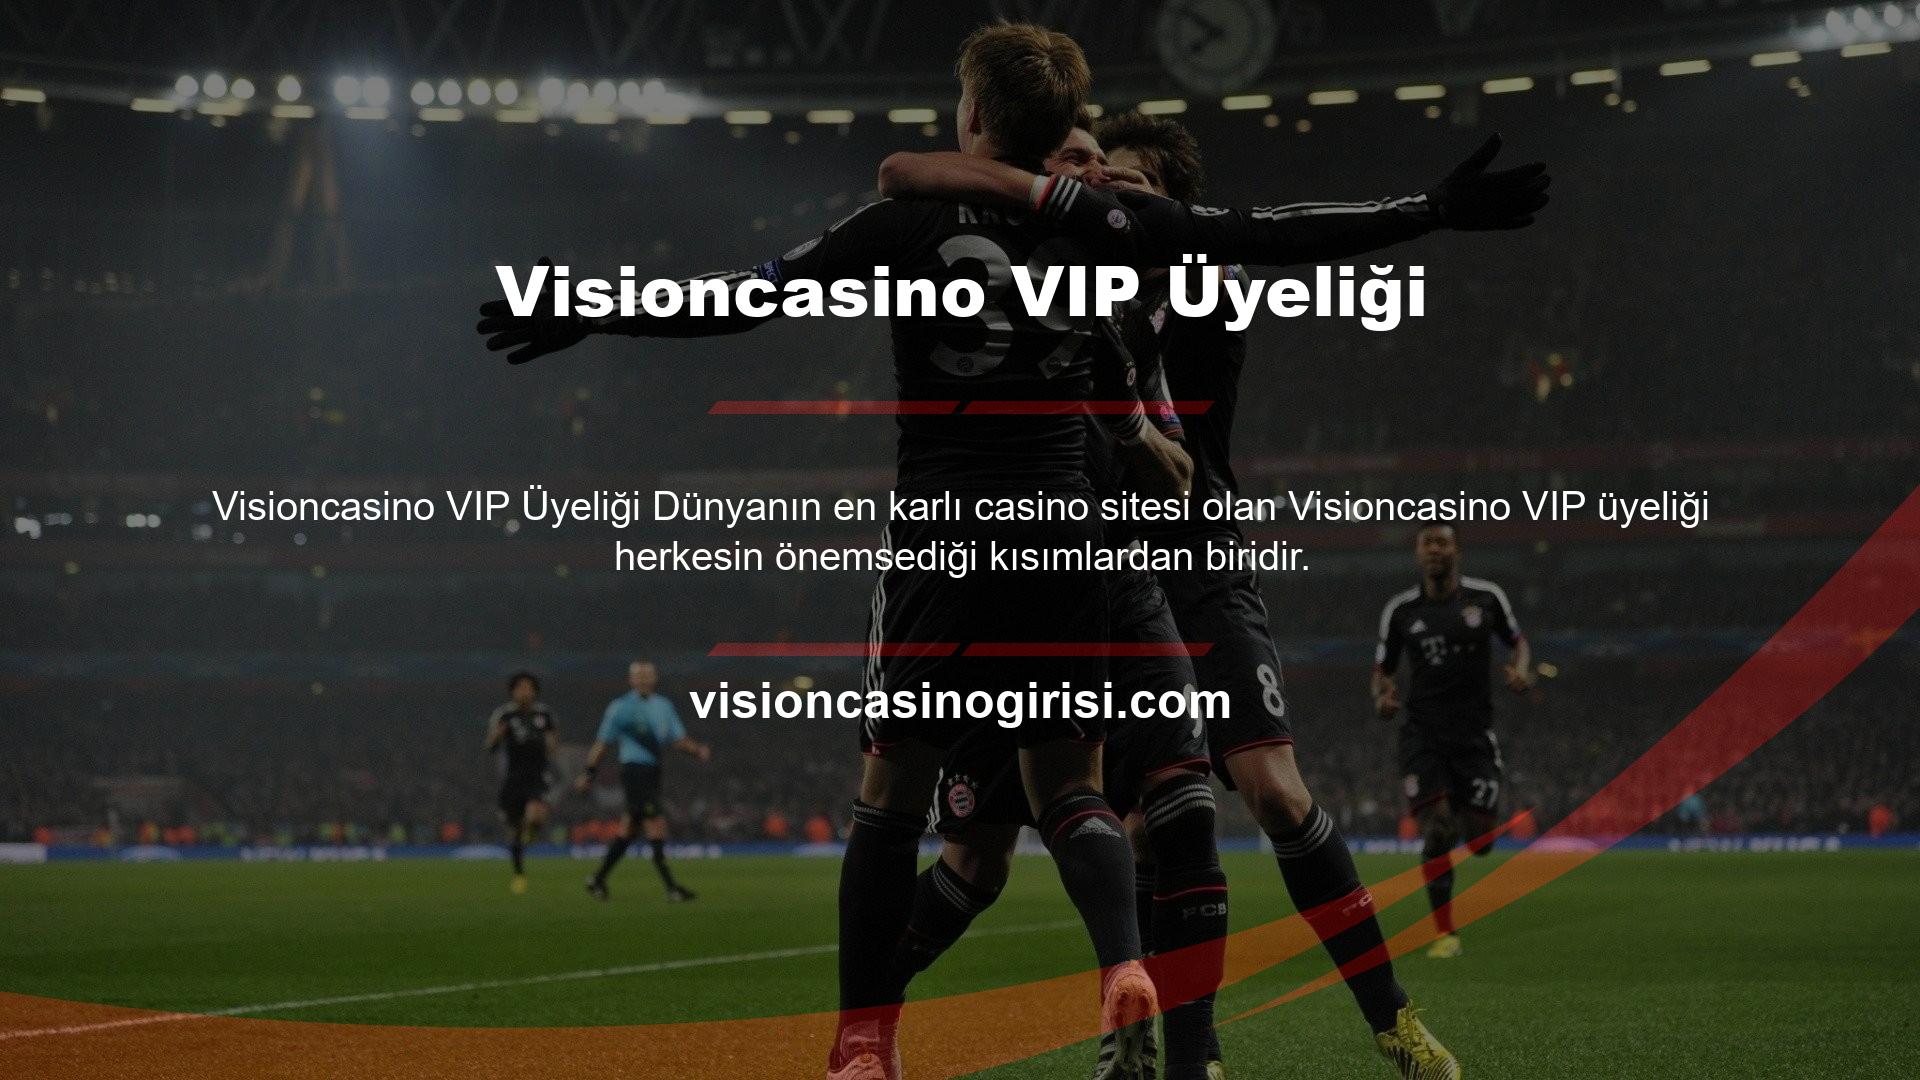 Visioncasino kullanıcılarının ilgi gösterdiği bu özel üyelik sistemi ile site sadece kullanıcının yatırımına bakmıyor